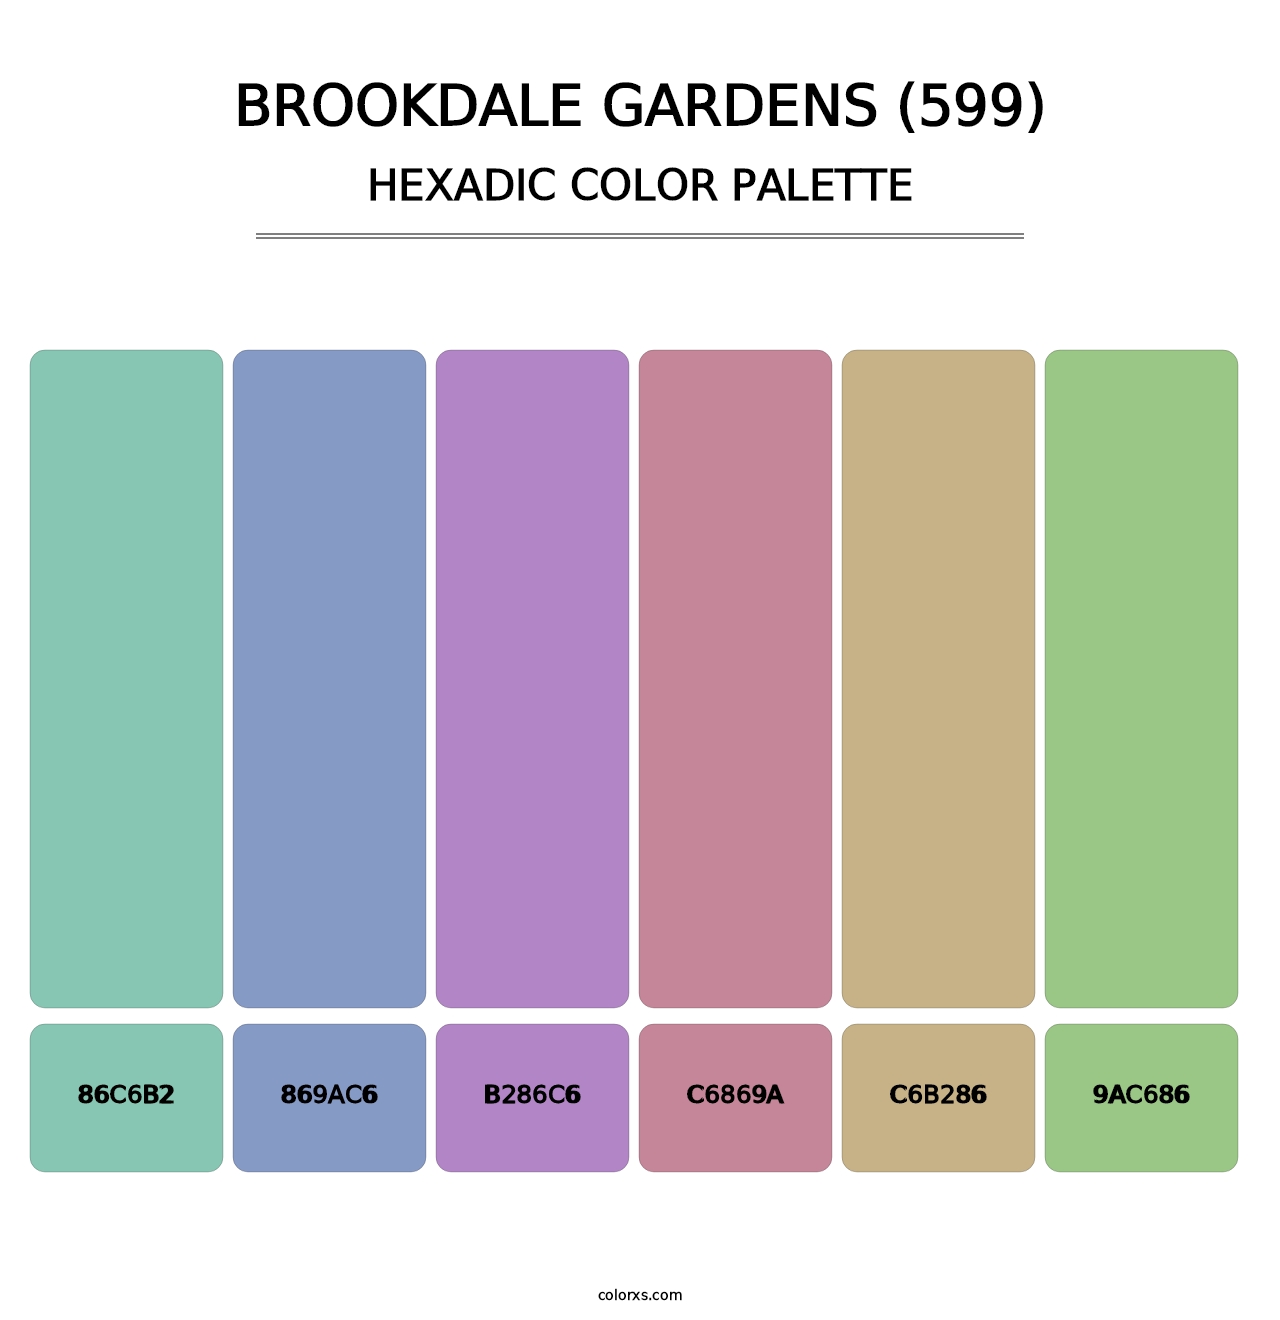 Brookdale Gardens (599) - Hexadic Color Palette